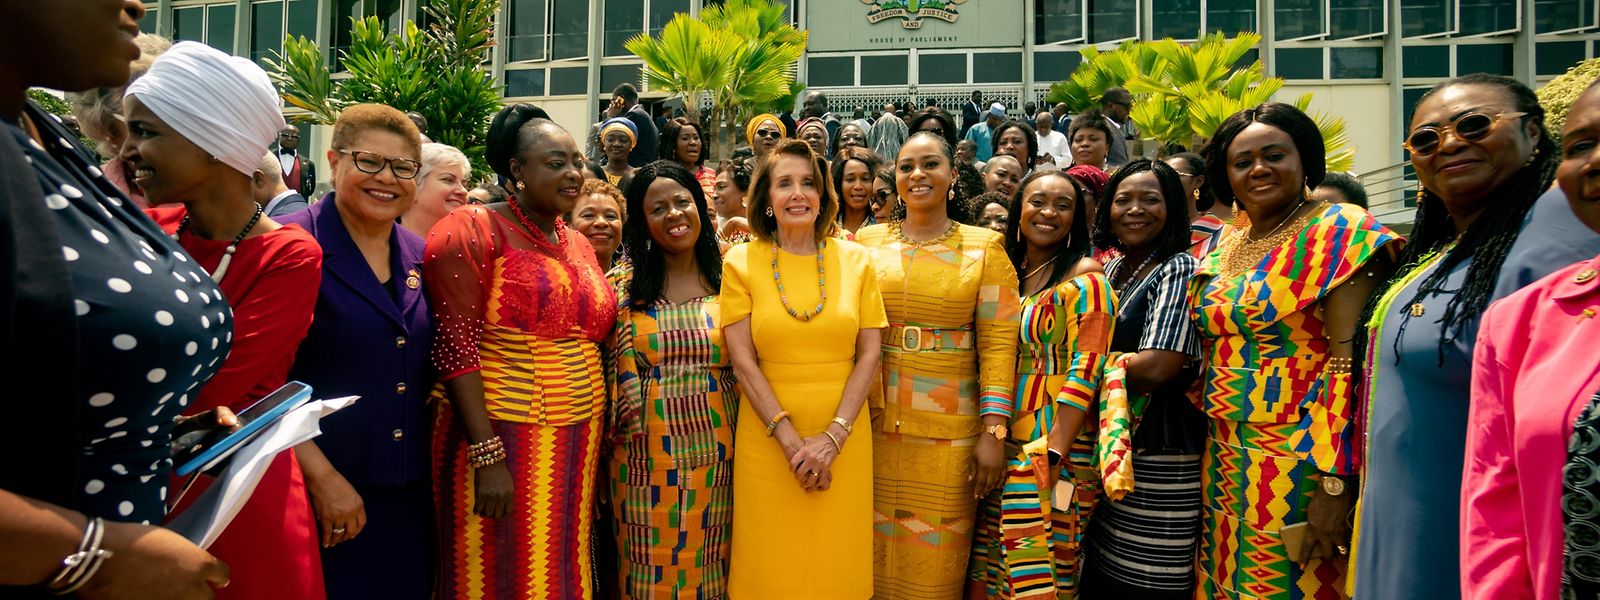 Kongressabgeordnete Ilhan Omar (Zweite von links), Kongressabgeordnete Karen Bass (Dritte von links) und Nancy Pelosi (mitte), Vorsitzende des Repräsentantenhauses, bei ihrem Besuch in Ghana.